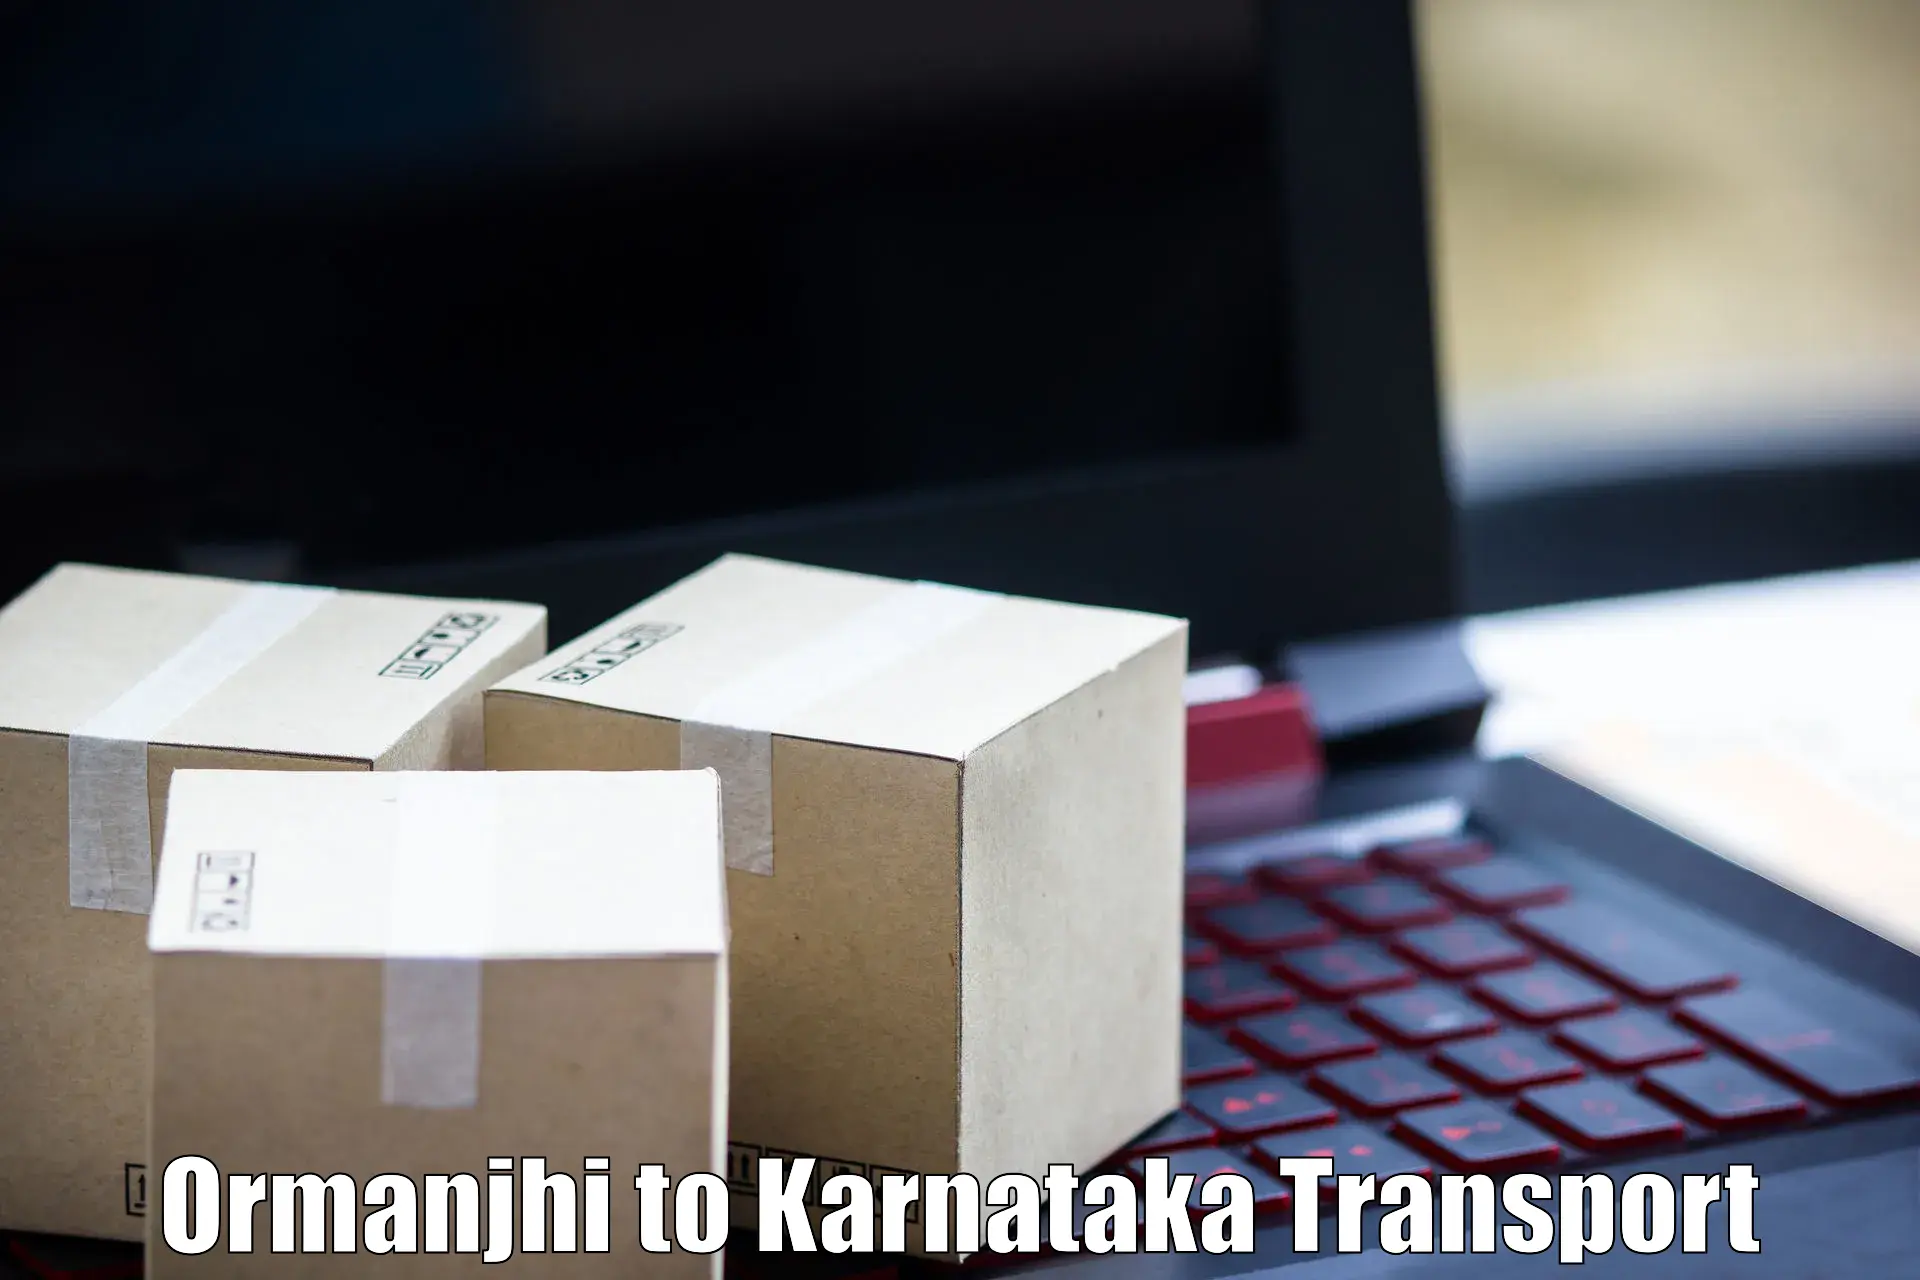 Cargo transportation services Ormanjhi to Yenepoya Mangalore